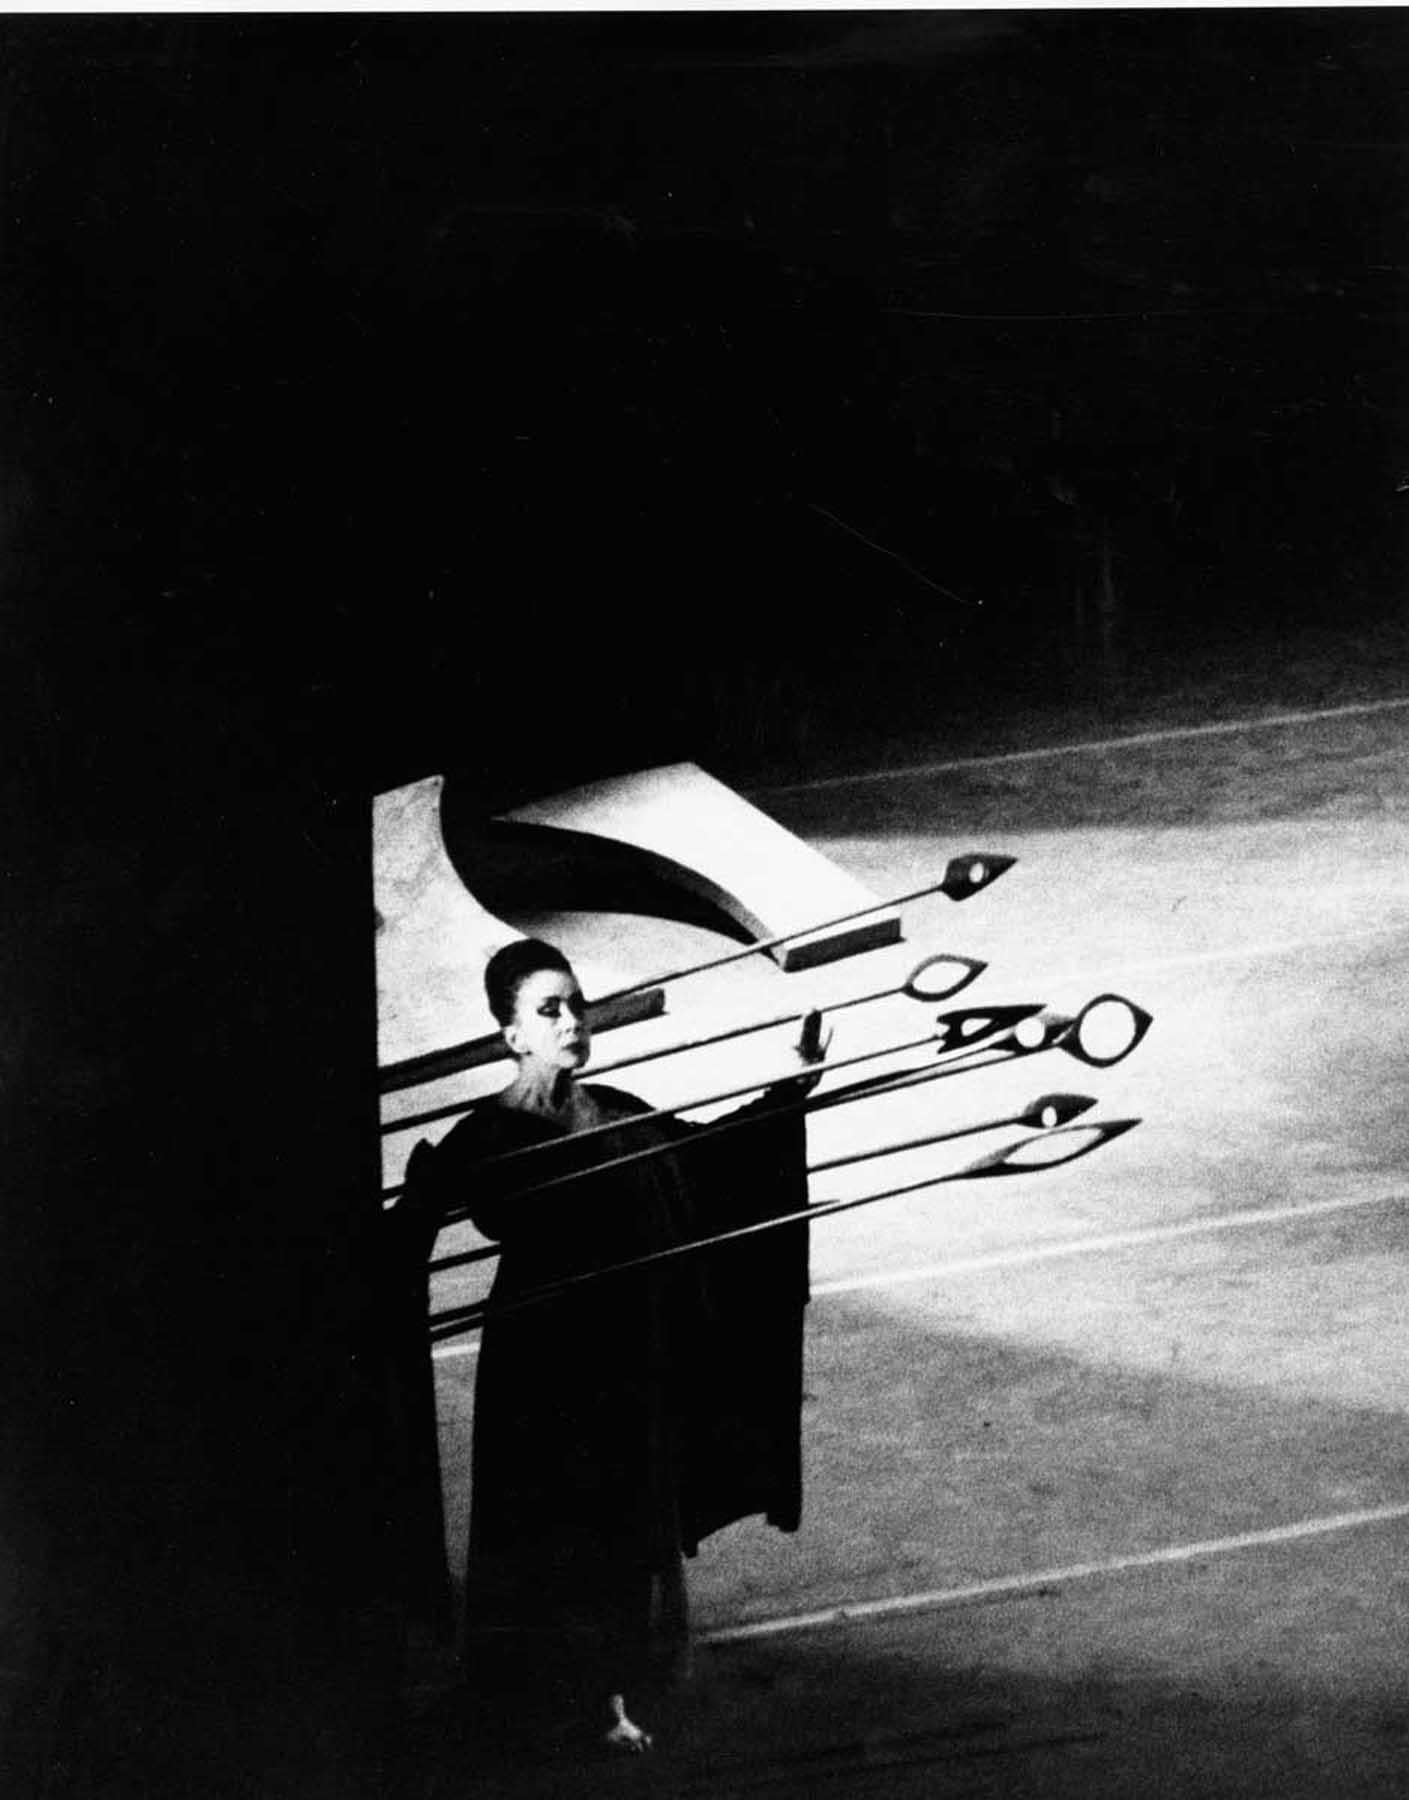 11 x 14" alte Silbergelatinefotografie von Martha Graham bei der Aufführung von "Clytemnestra", 1966. Signiert von Jack Mitchell auf der Rückseite des Drucks. Kommt direkt aus dem Jack Mitchell Archiv mit einem Echtheitszertifikat.

Jack Mitchells